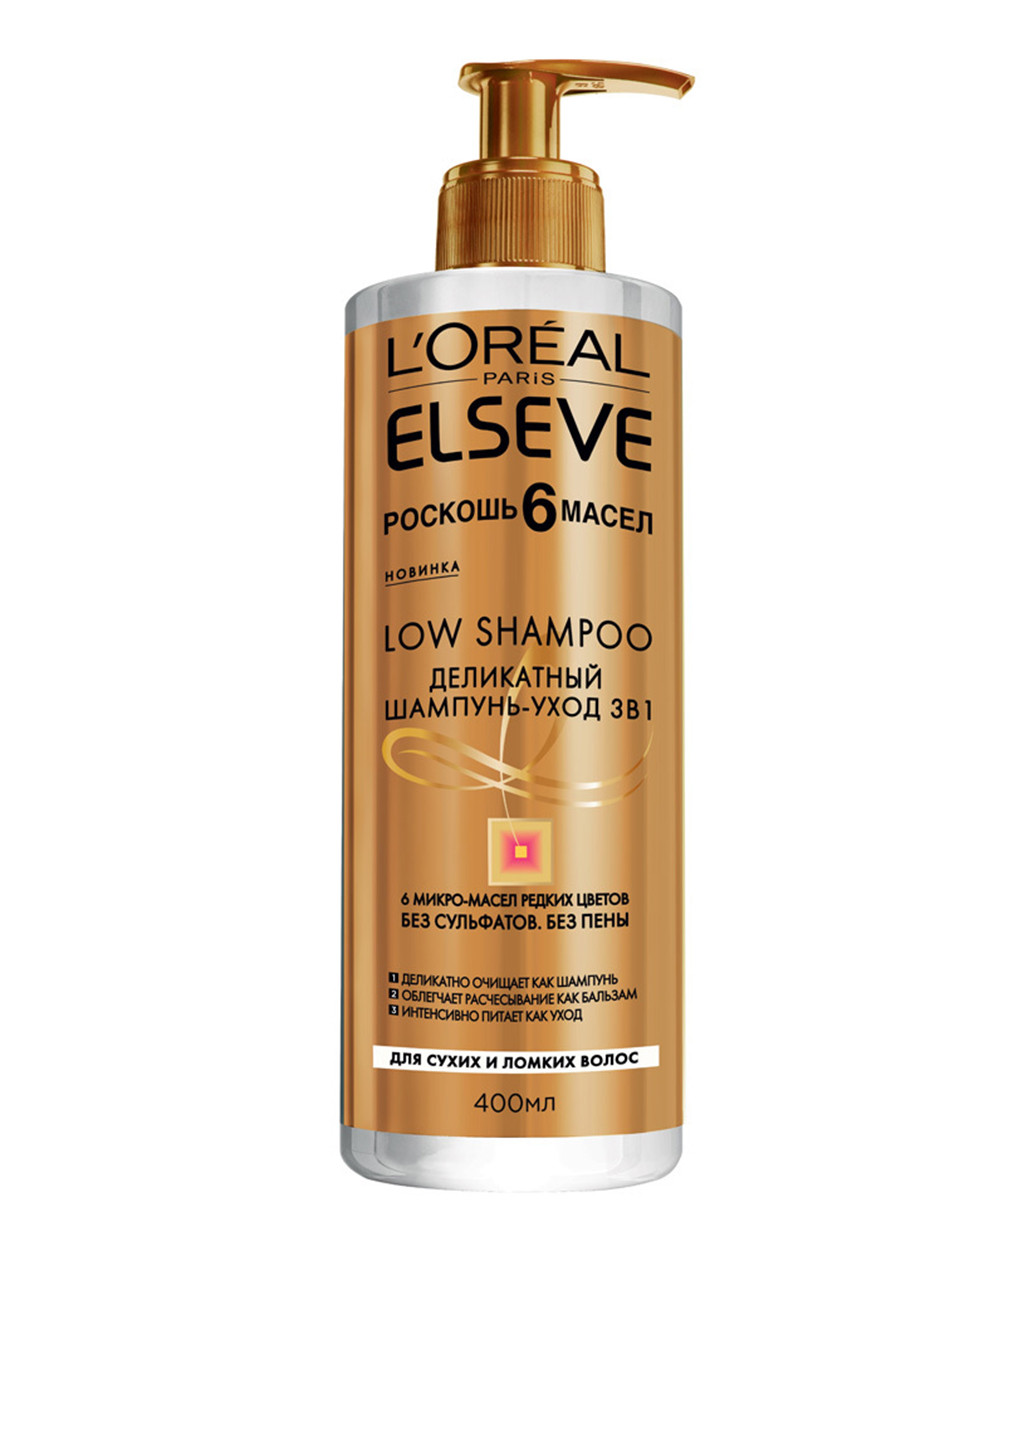 Деликатный шампунь-уход для сухих и ломких волос 3в1 "Роскошь 6 масел" Elseve Low Shampoo 400 мл L'Oreal Paris (88092343)